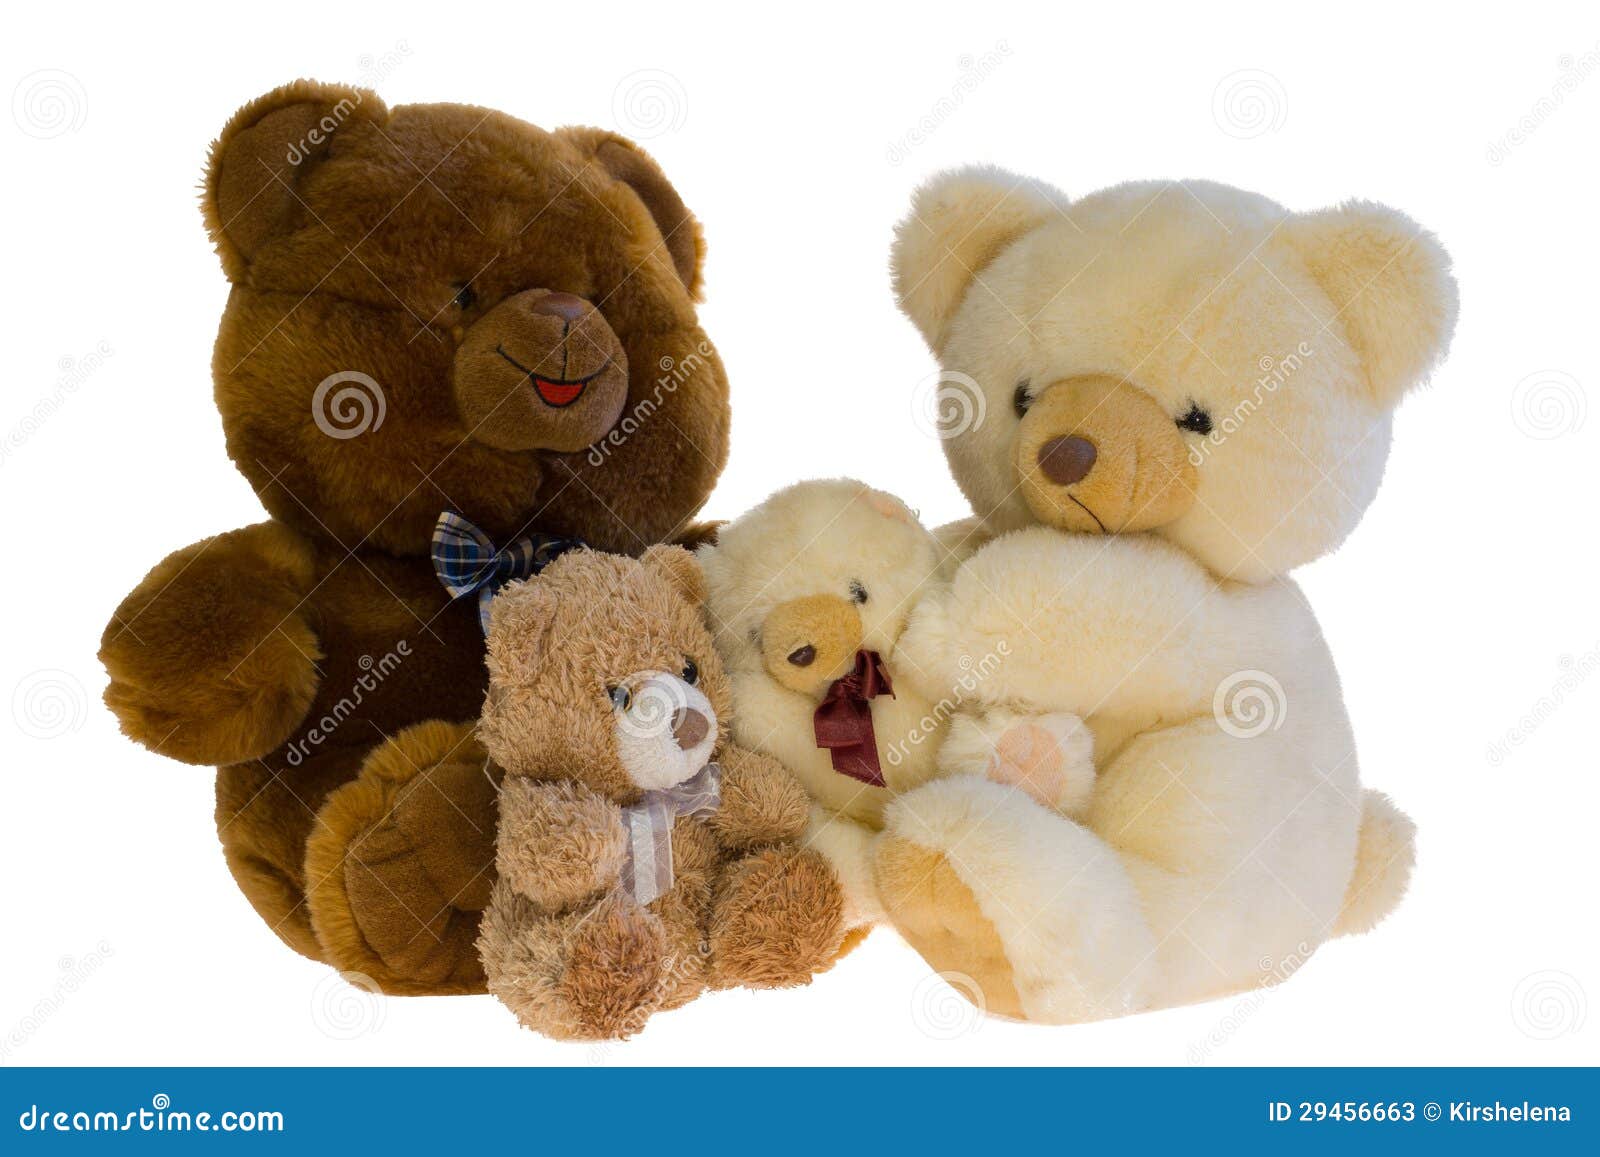 photos stock famille des ours de nounours de jouet image